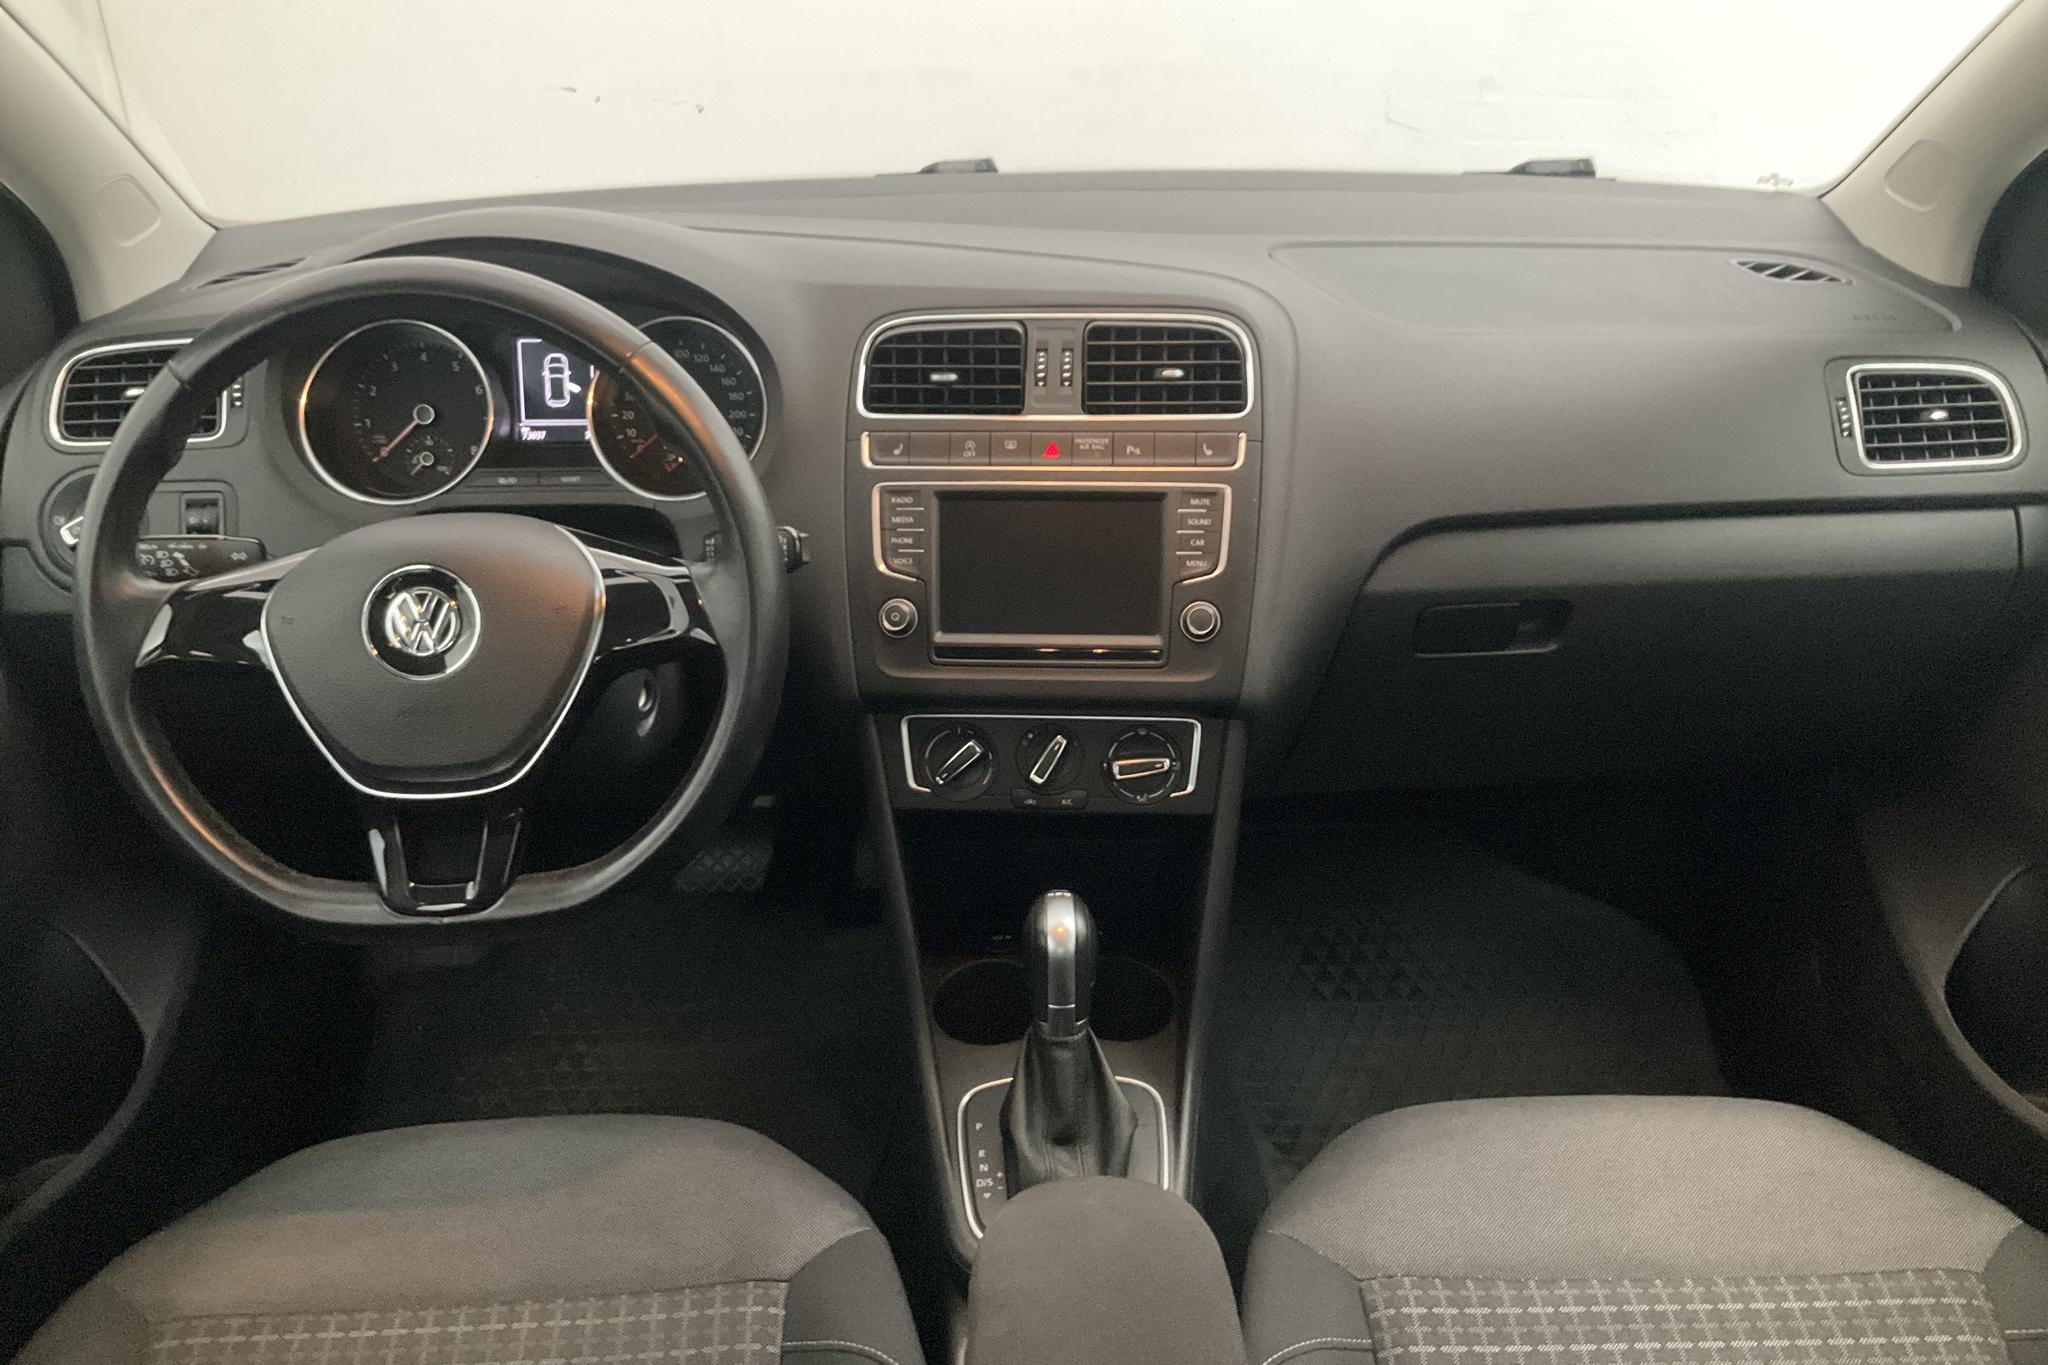 VW Polo 1.2 TSI 5dr (90hk) - 73 040 km - Automatic - black - 2016